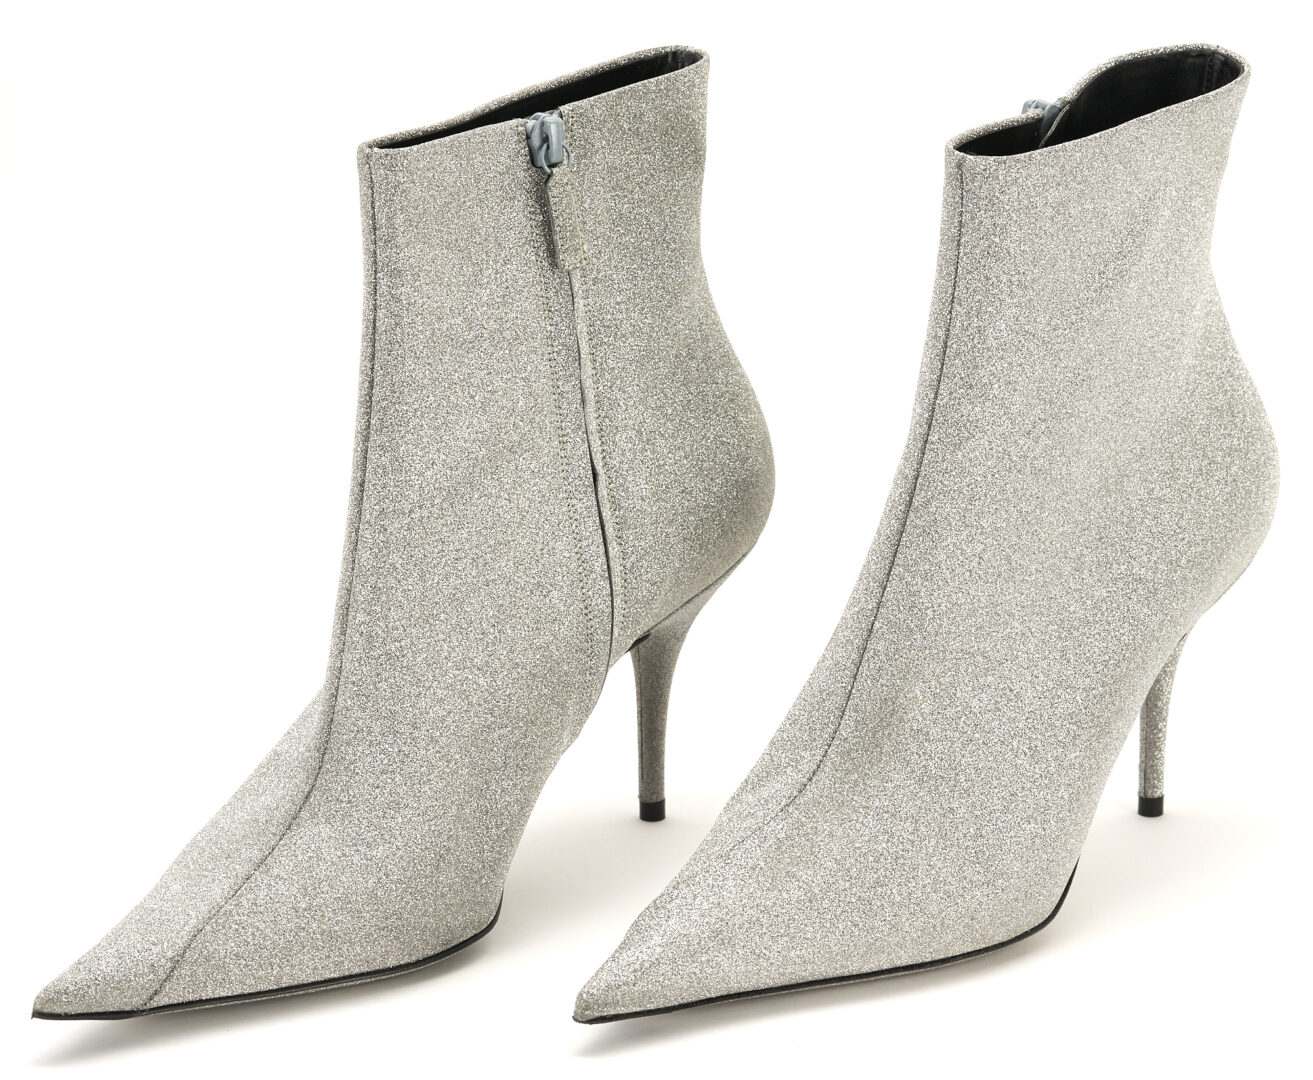 Lot 1254: 2 Prs. Designer Boots, incl. Knit Salvatore Ferragamo & Silver Glitter Balenciaga